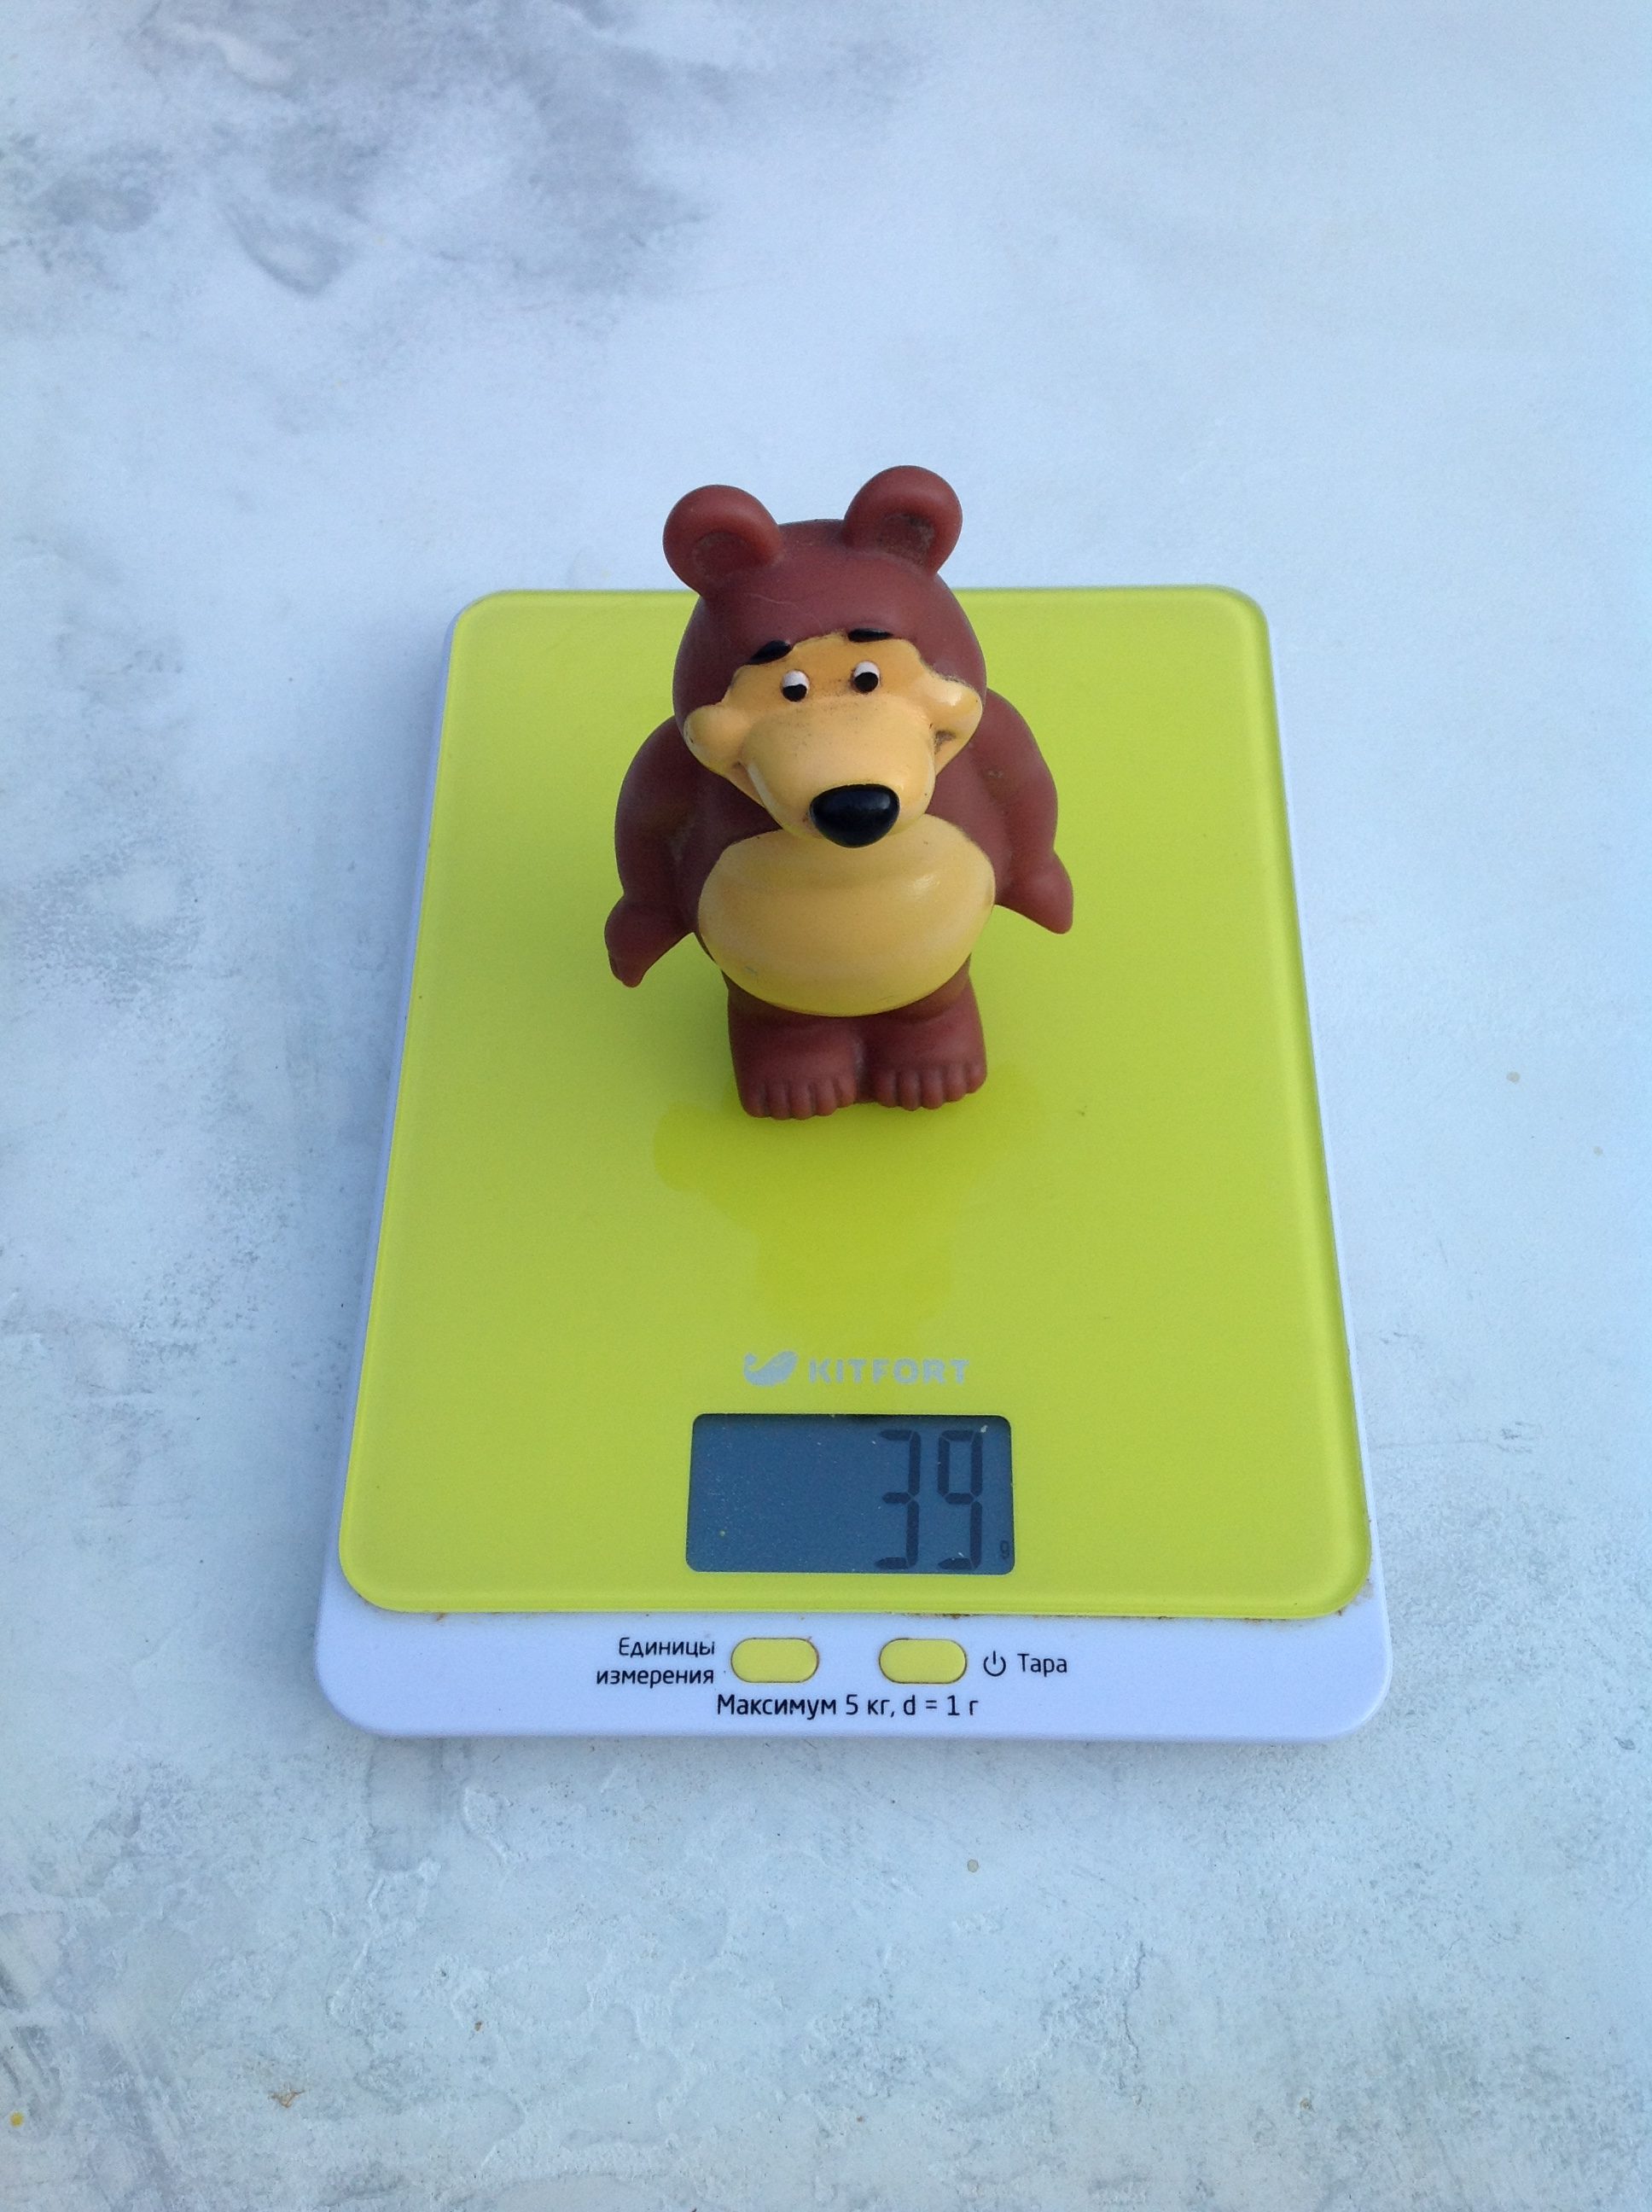 小橡皮熊玩具有多重？